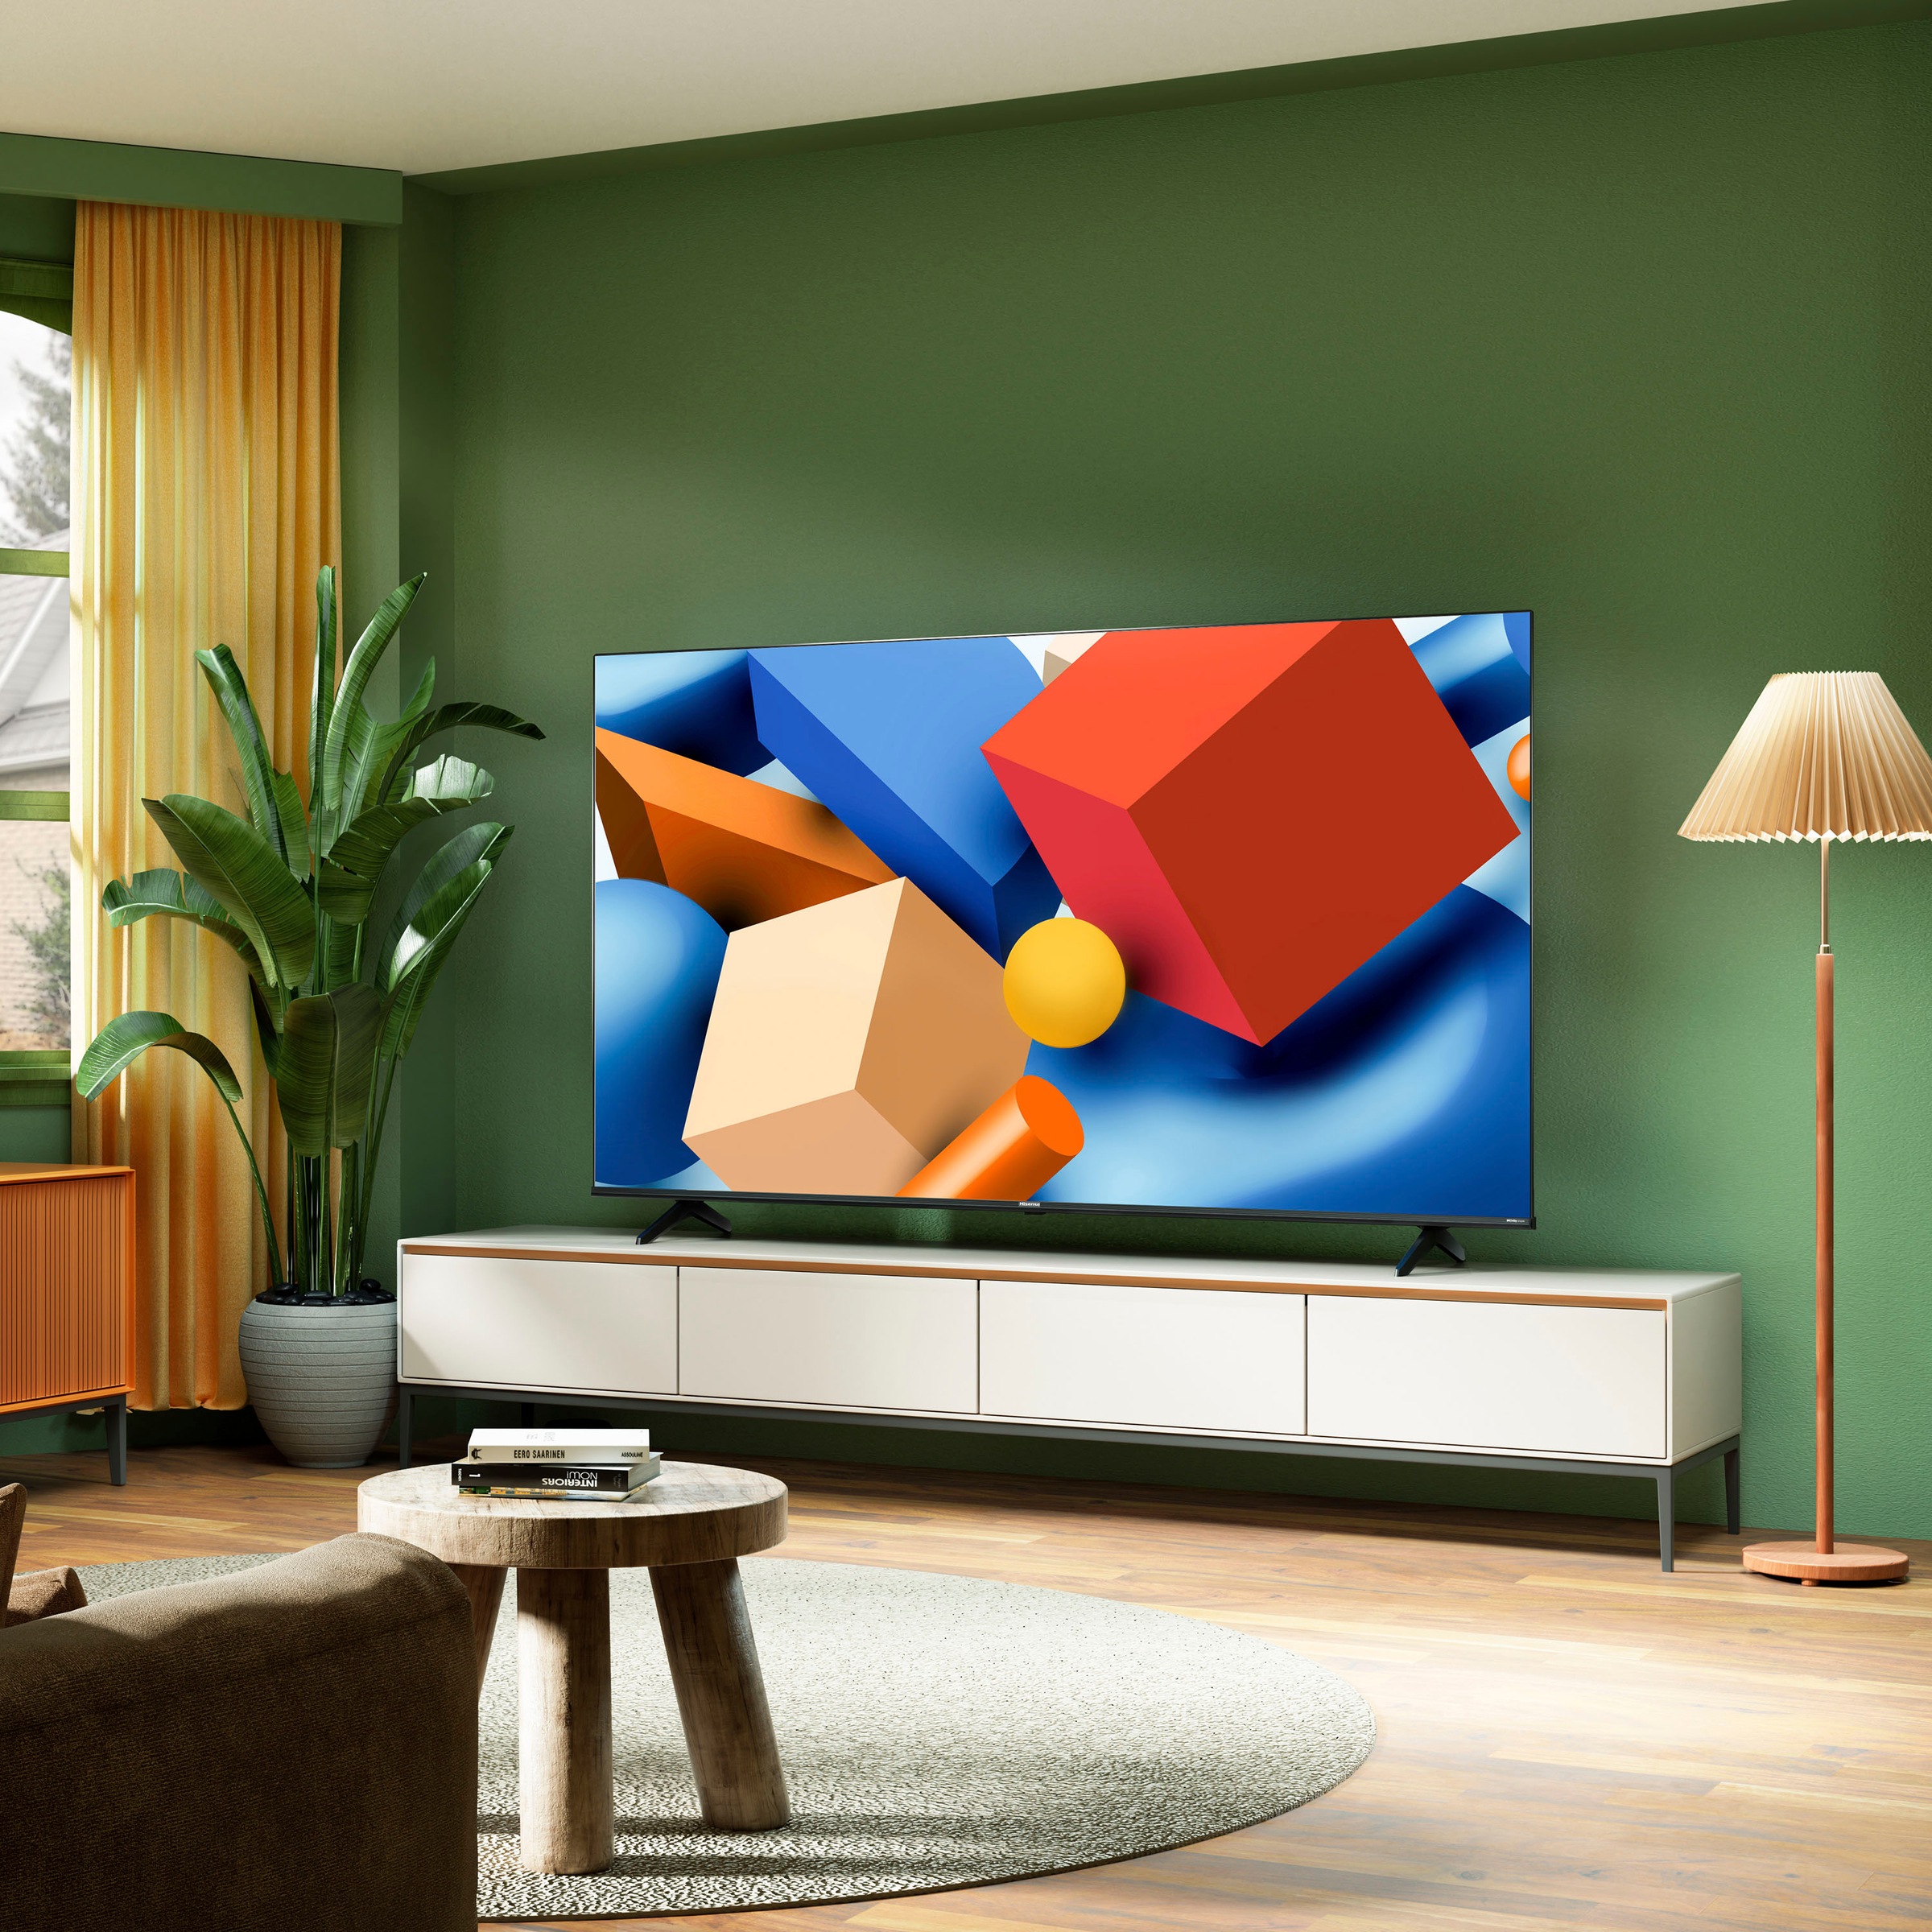 Hisense LED-Fernseher »43E61KT«, 108 cm/43 Zoll, 4K Ultra HD, Smart-TV, Dolby Vision, Triple Tuner DVB-C/S/S2/T/T2